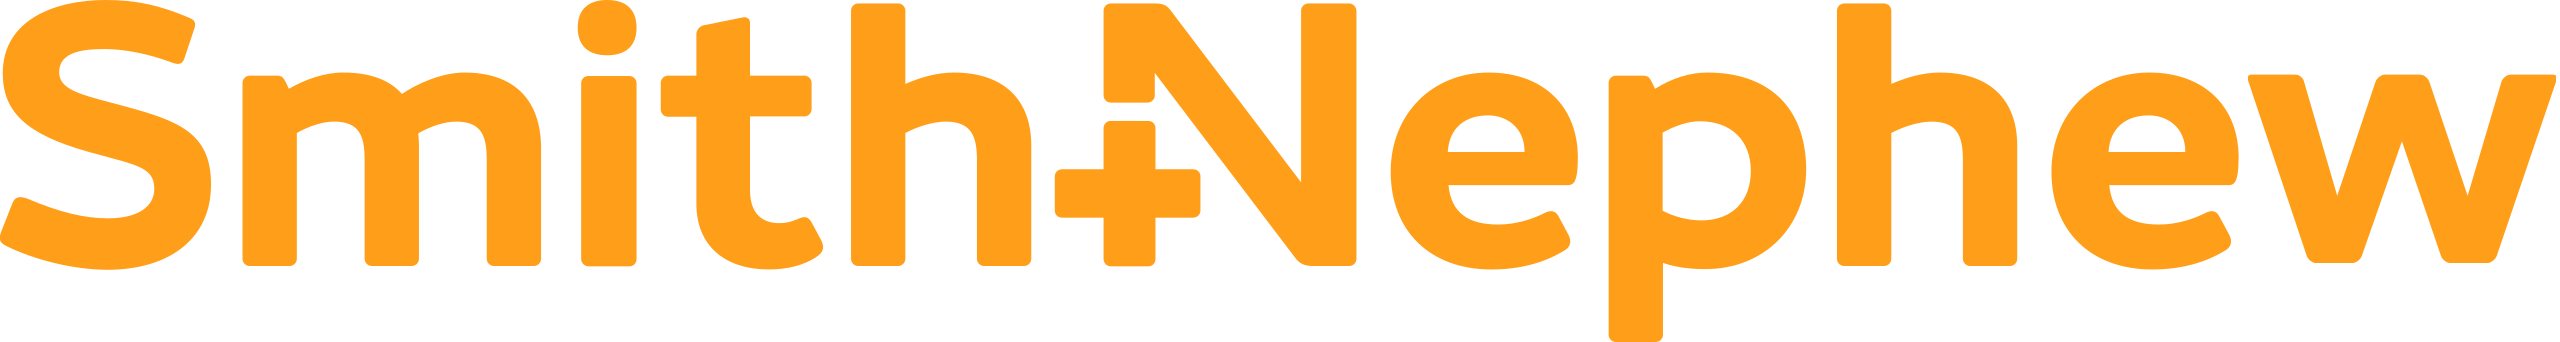 Smith + Nephew Logo